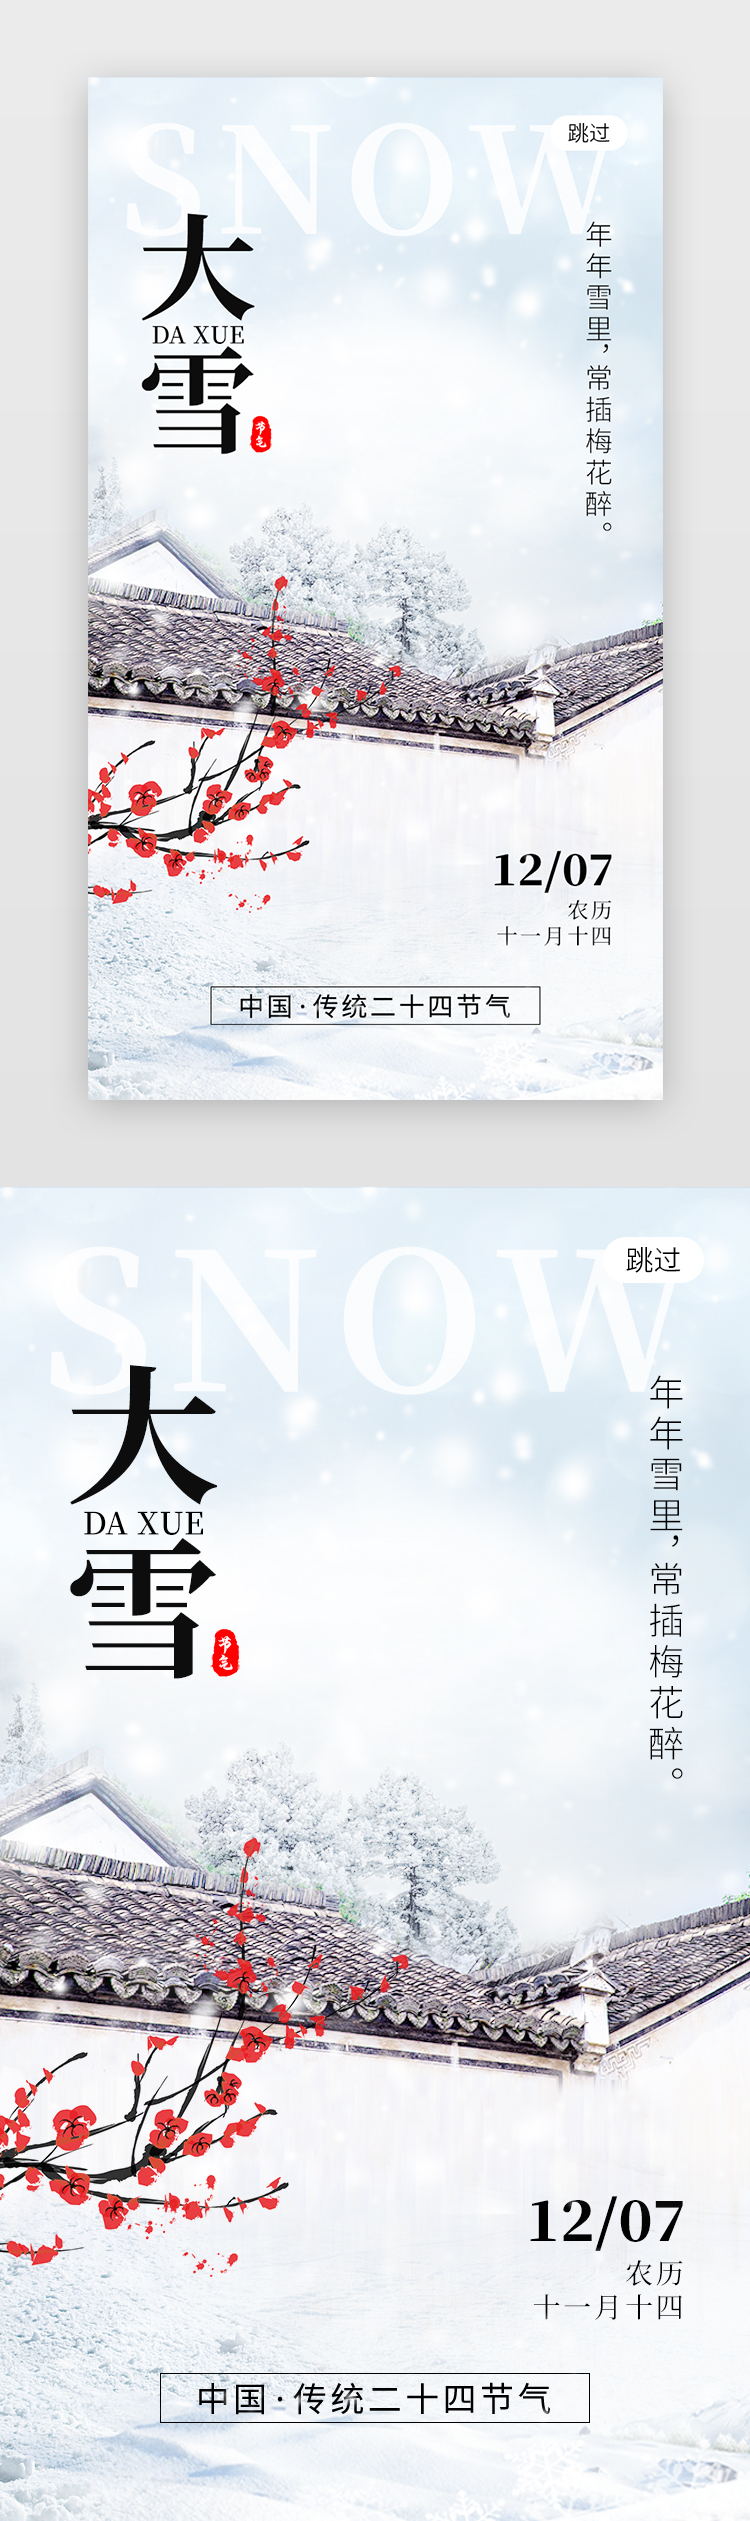 二十四节气大雪app闪屏创意蓝白色青瓦建筑图片